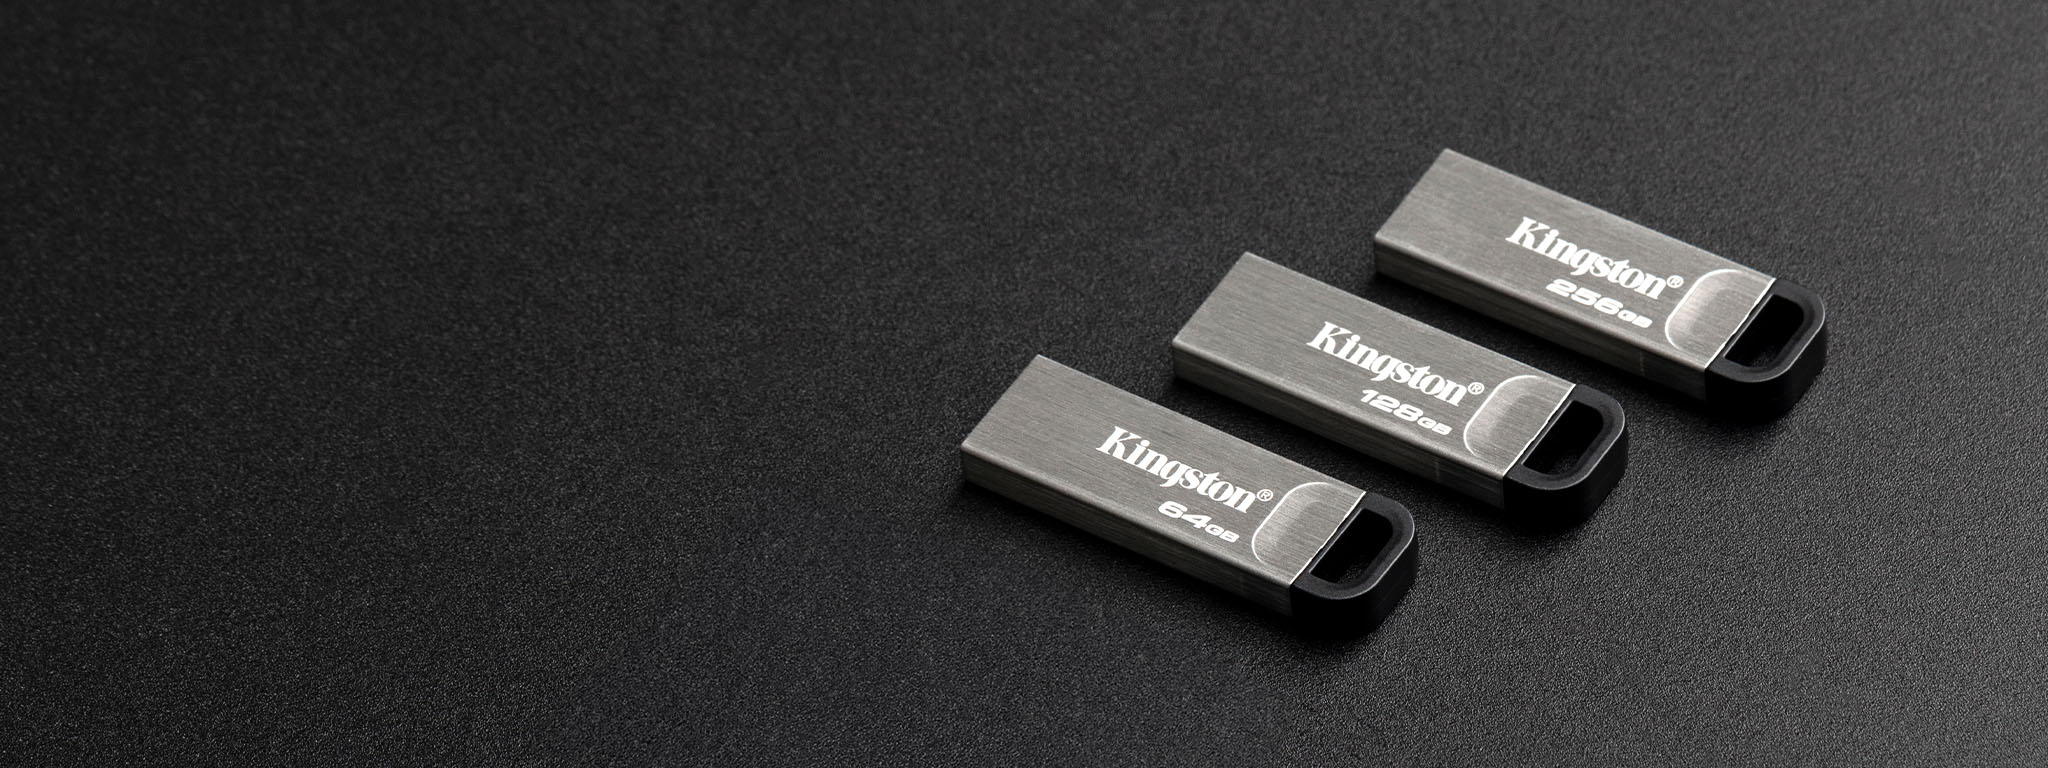 Vista superior de cuatro capacidades diferentes de las unidades flash USB DT Kyson sobre una superficie negra